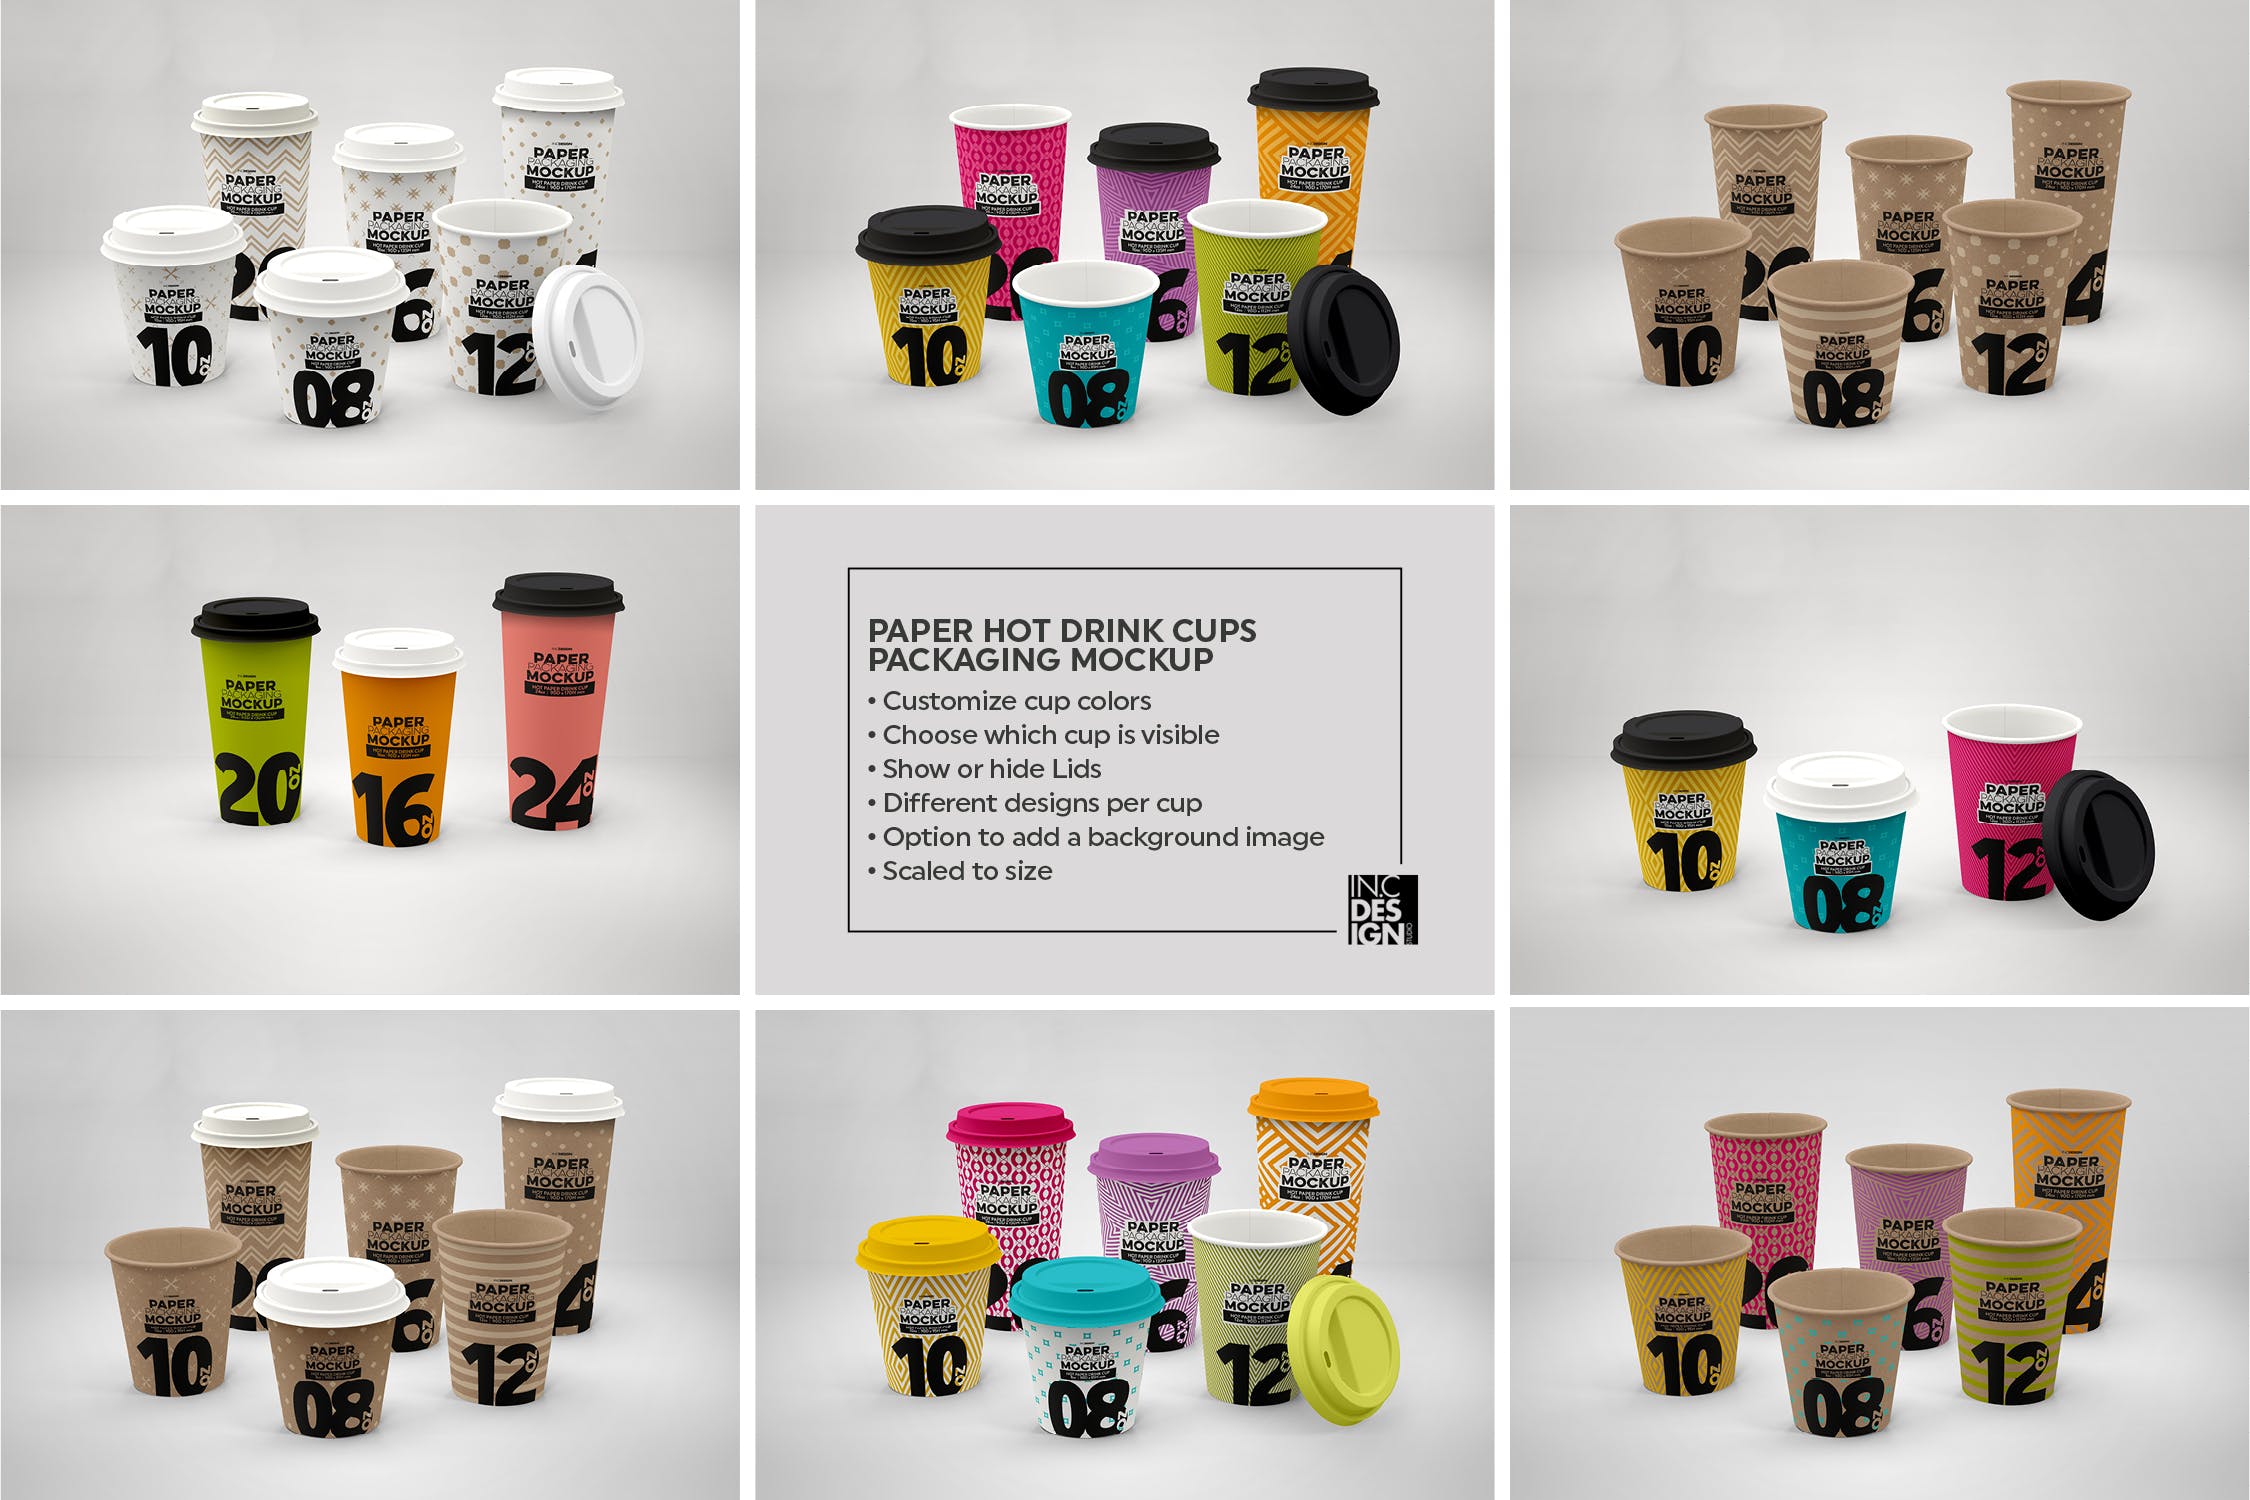 热饮一次性纸杯外观设计第一素材精选 Paper Hot Drink Cups Packaging Mockup插图(3)